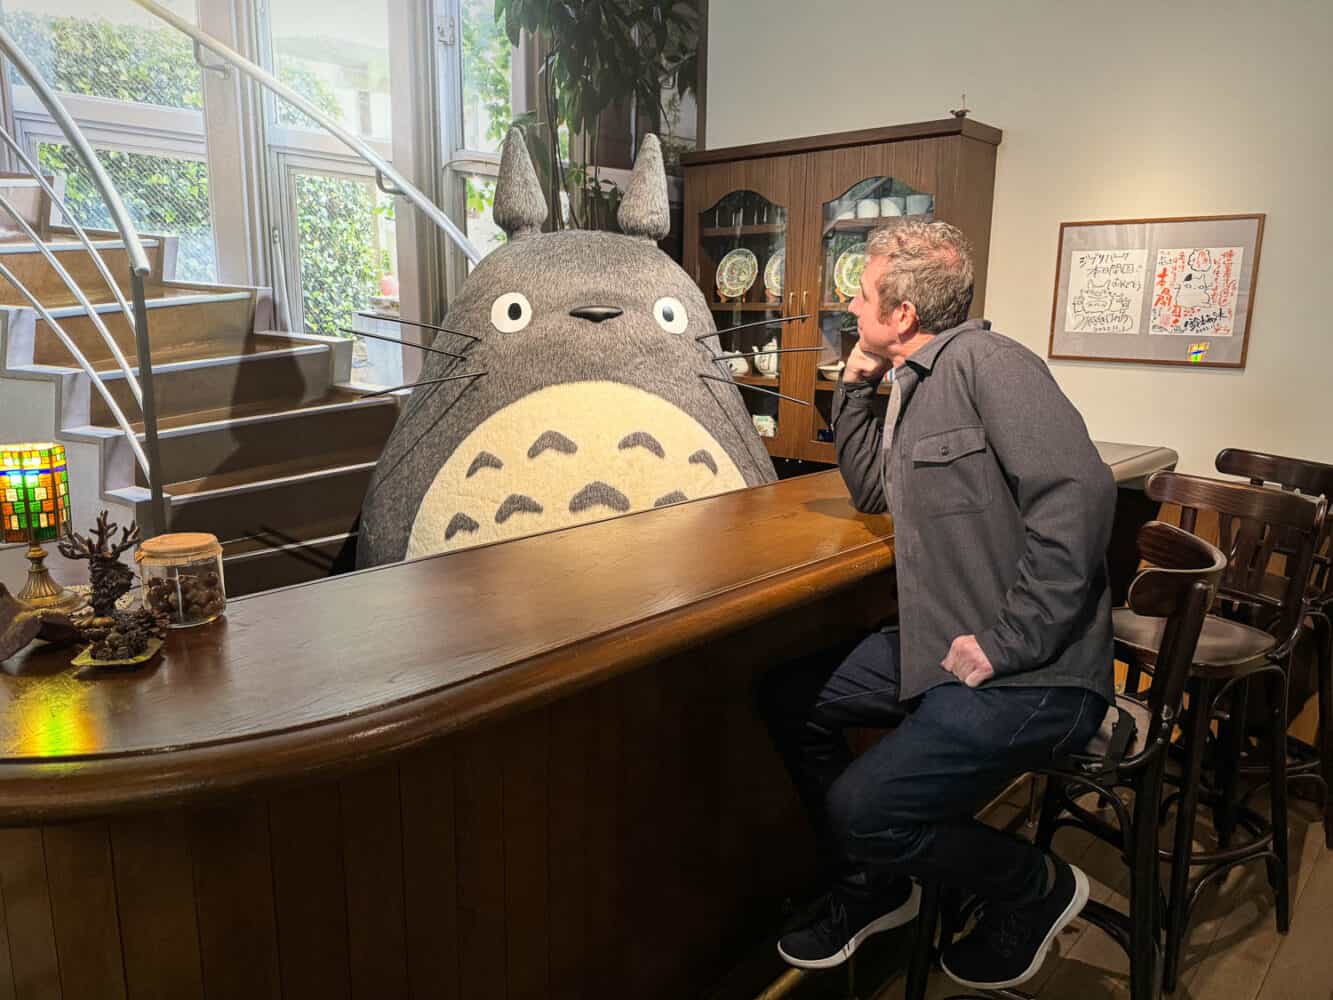 Simon meeting Totoro at Ghibli Park, Japan